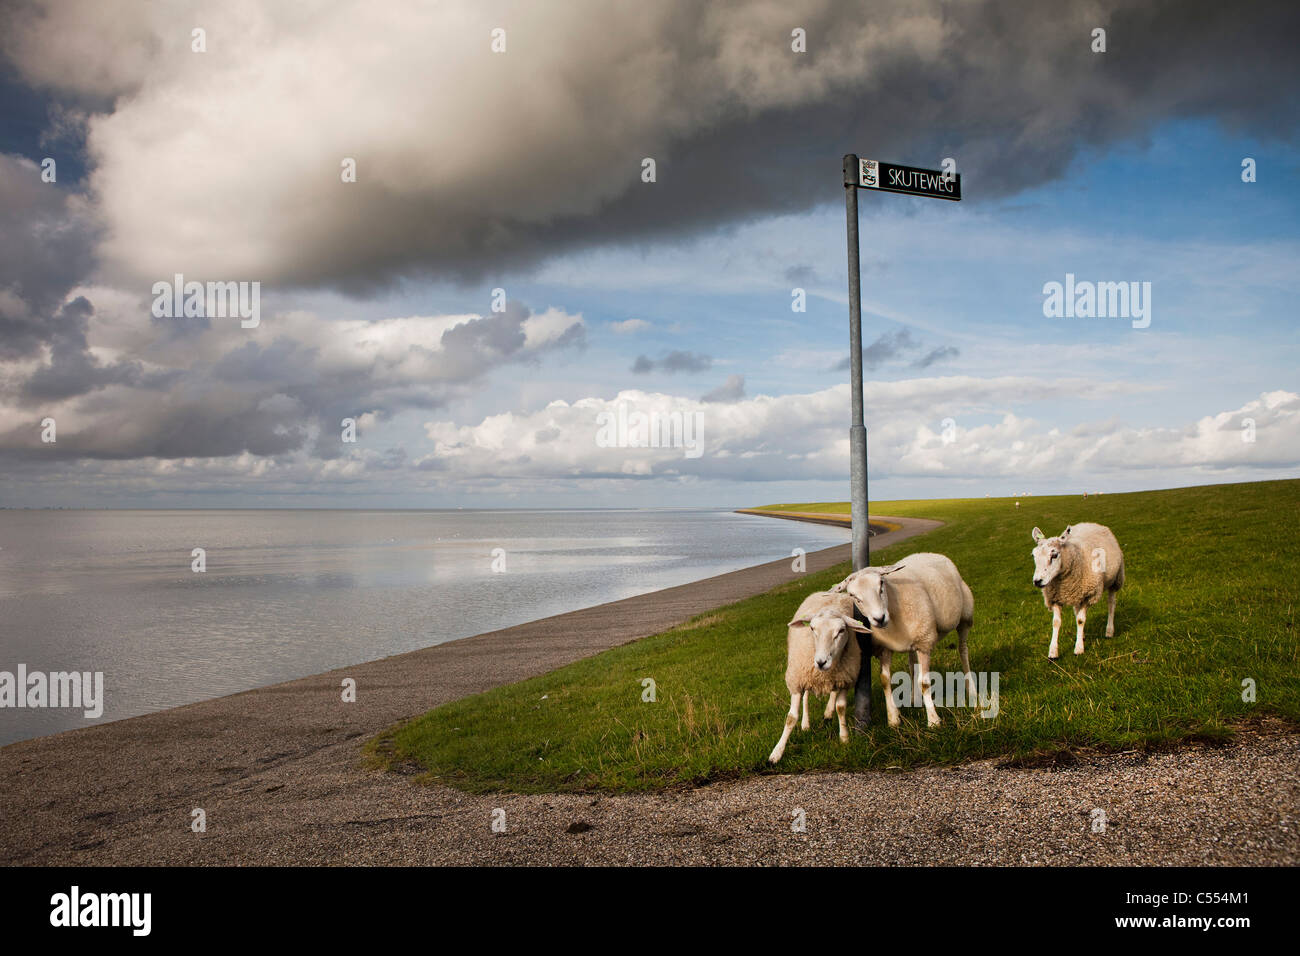 Les Pays-Bas, sur l'île d'Ameland, Buren appartenant aux îles de la mer des Wadden. Unesco World Heritage Site. Moutons sur digue Banque D'Images